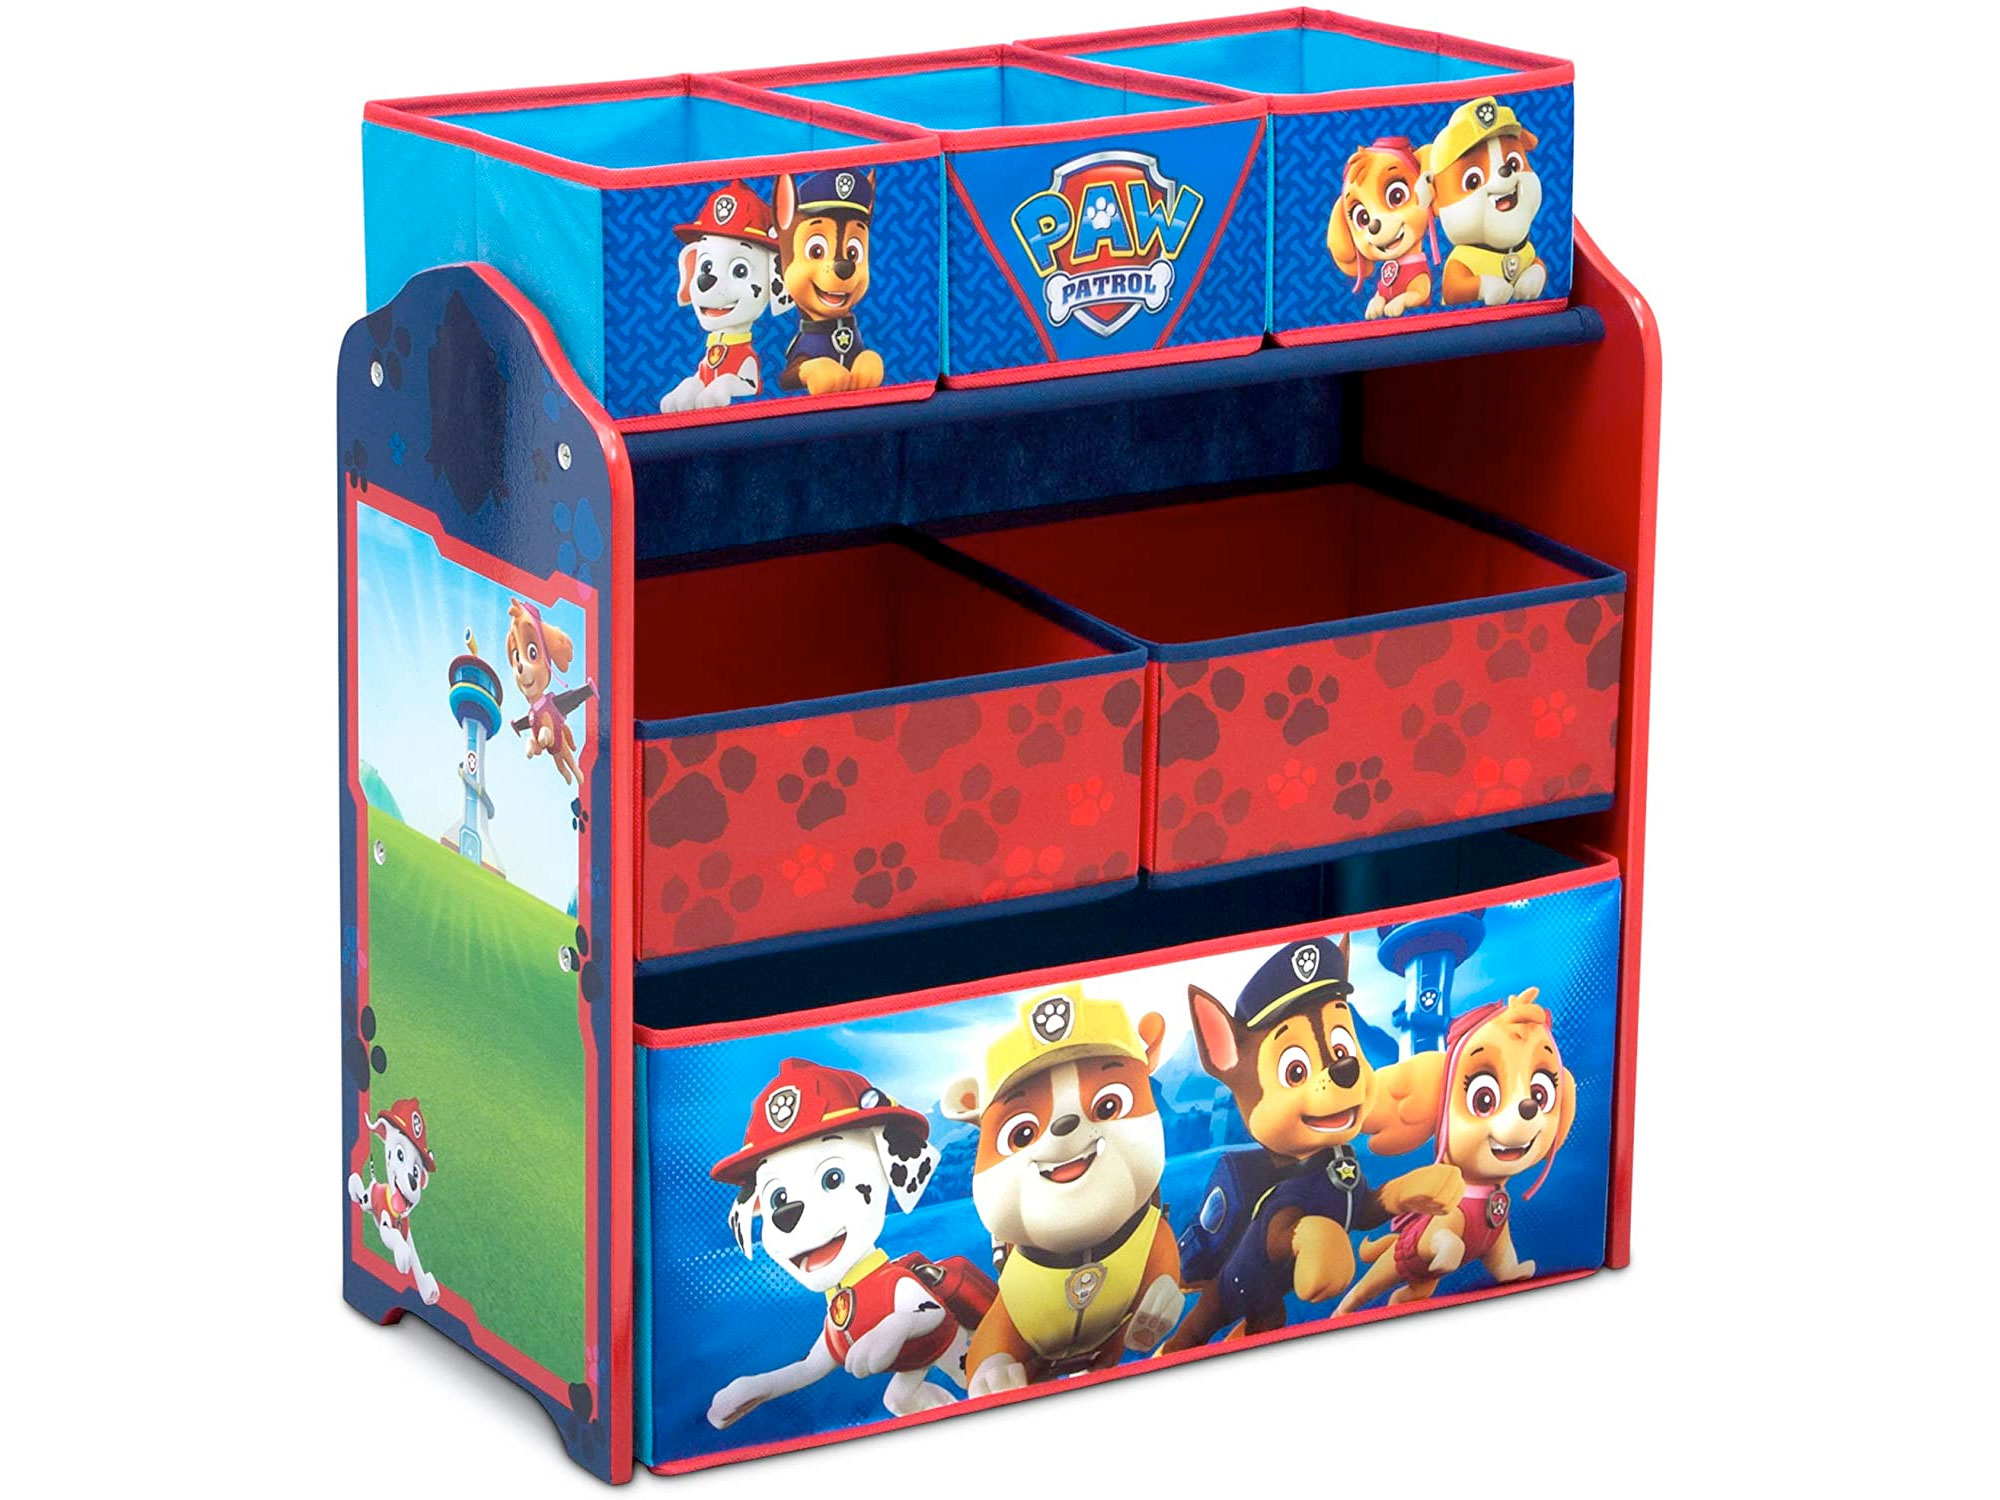 Amazon：PAW Patrol 6 Bin Toy Storage Organizer只卖$39.97